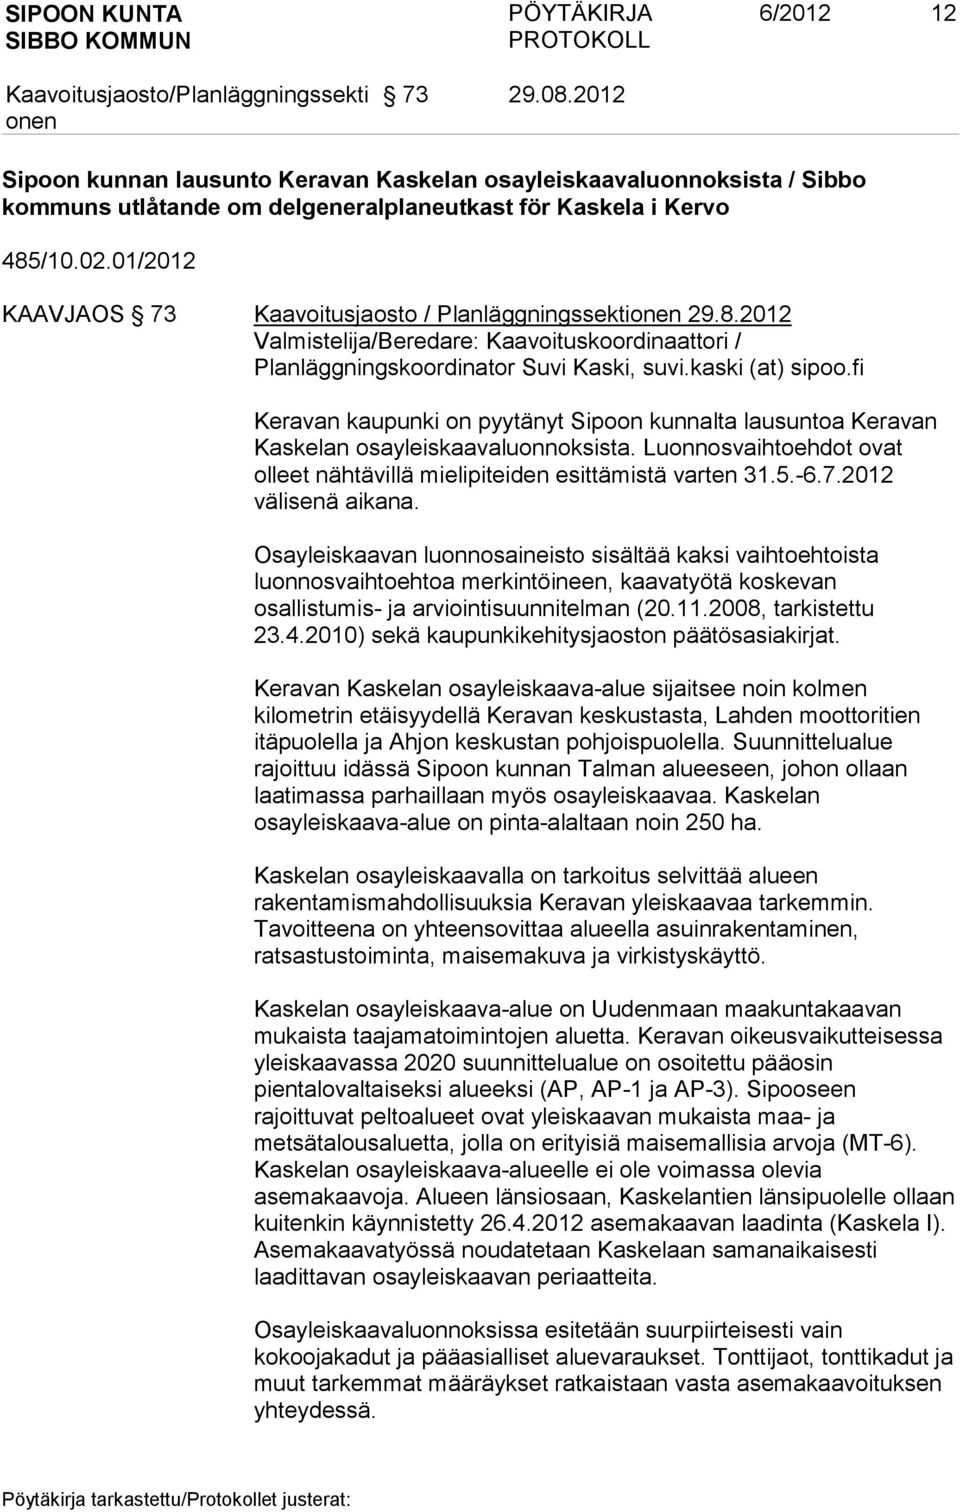 fi Keravan kaupunki on pyytänyt Sipoon kunnalta lausuntoa Keravan Kaskelan osayleiskaavaluonnoksista. Luonnosvaihtoehdot ovat olleet nähtävillä mielipiteiden esittämistä varten 31.5.-6.7.